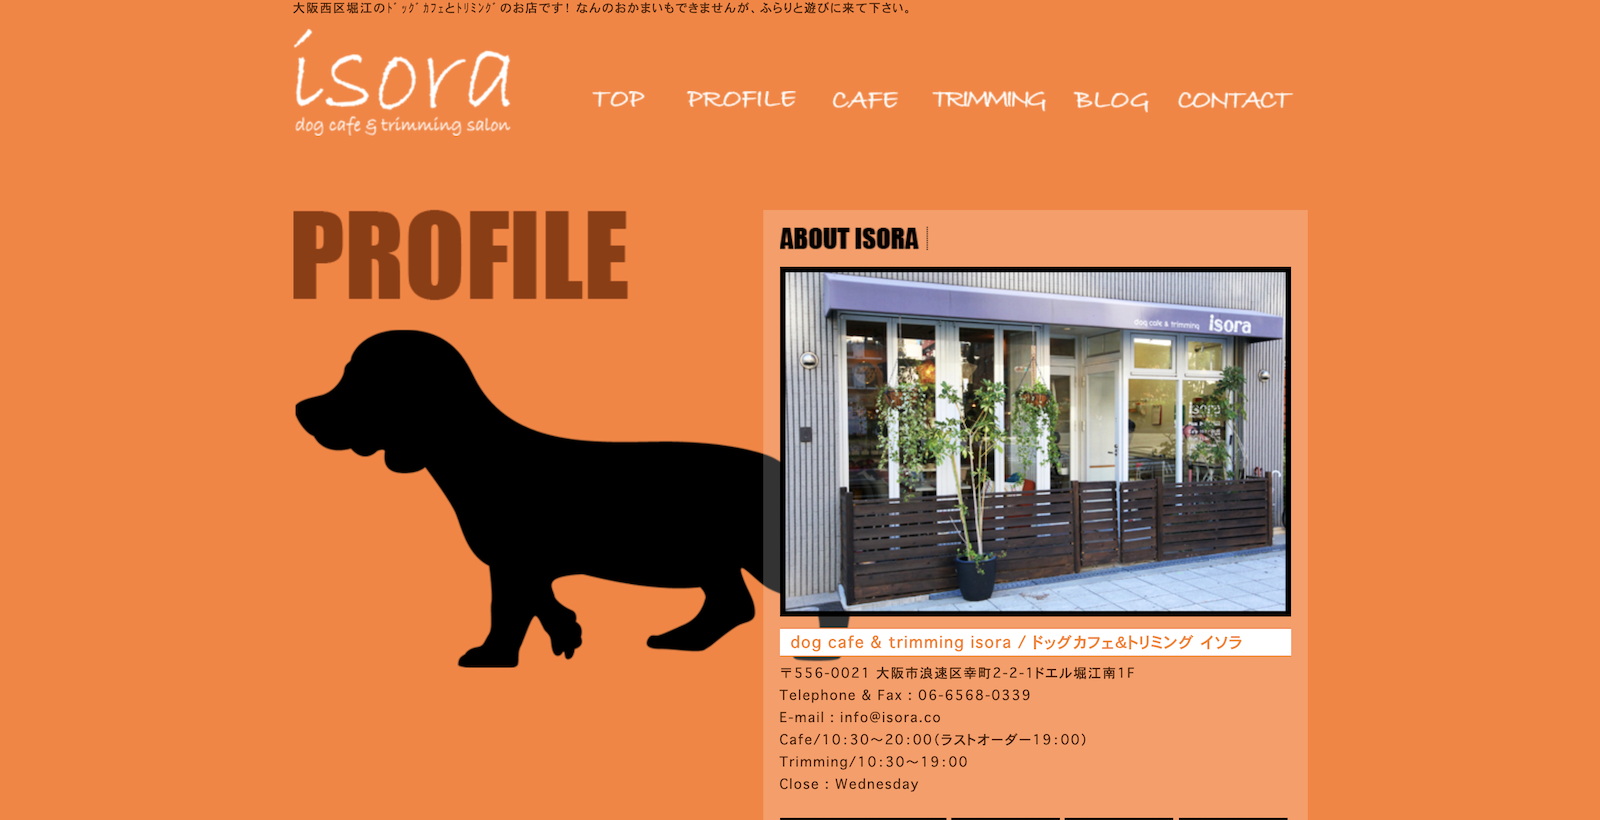 大阪 愛犬と出かけよう おすすめのドッグカフェ レストラン選 Doghuggy